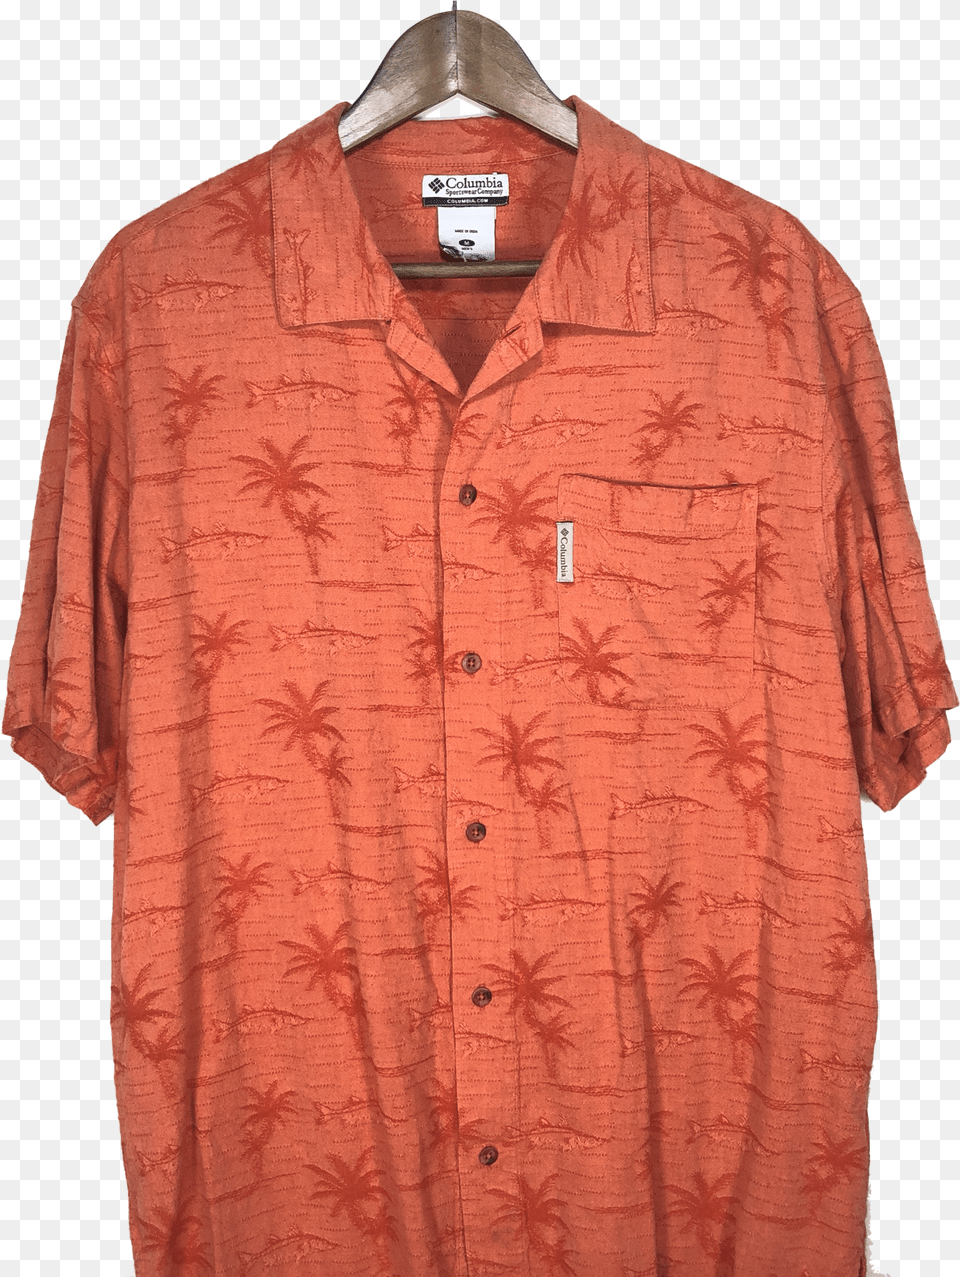 Columbia Snook Fish Palm Tree Hawaiian Shirt Active Shirt Png Image